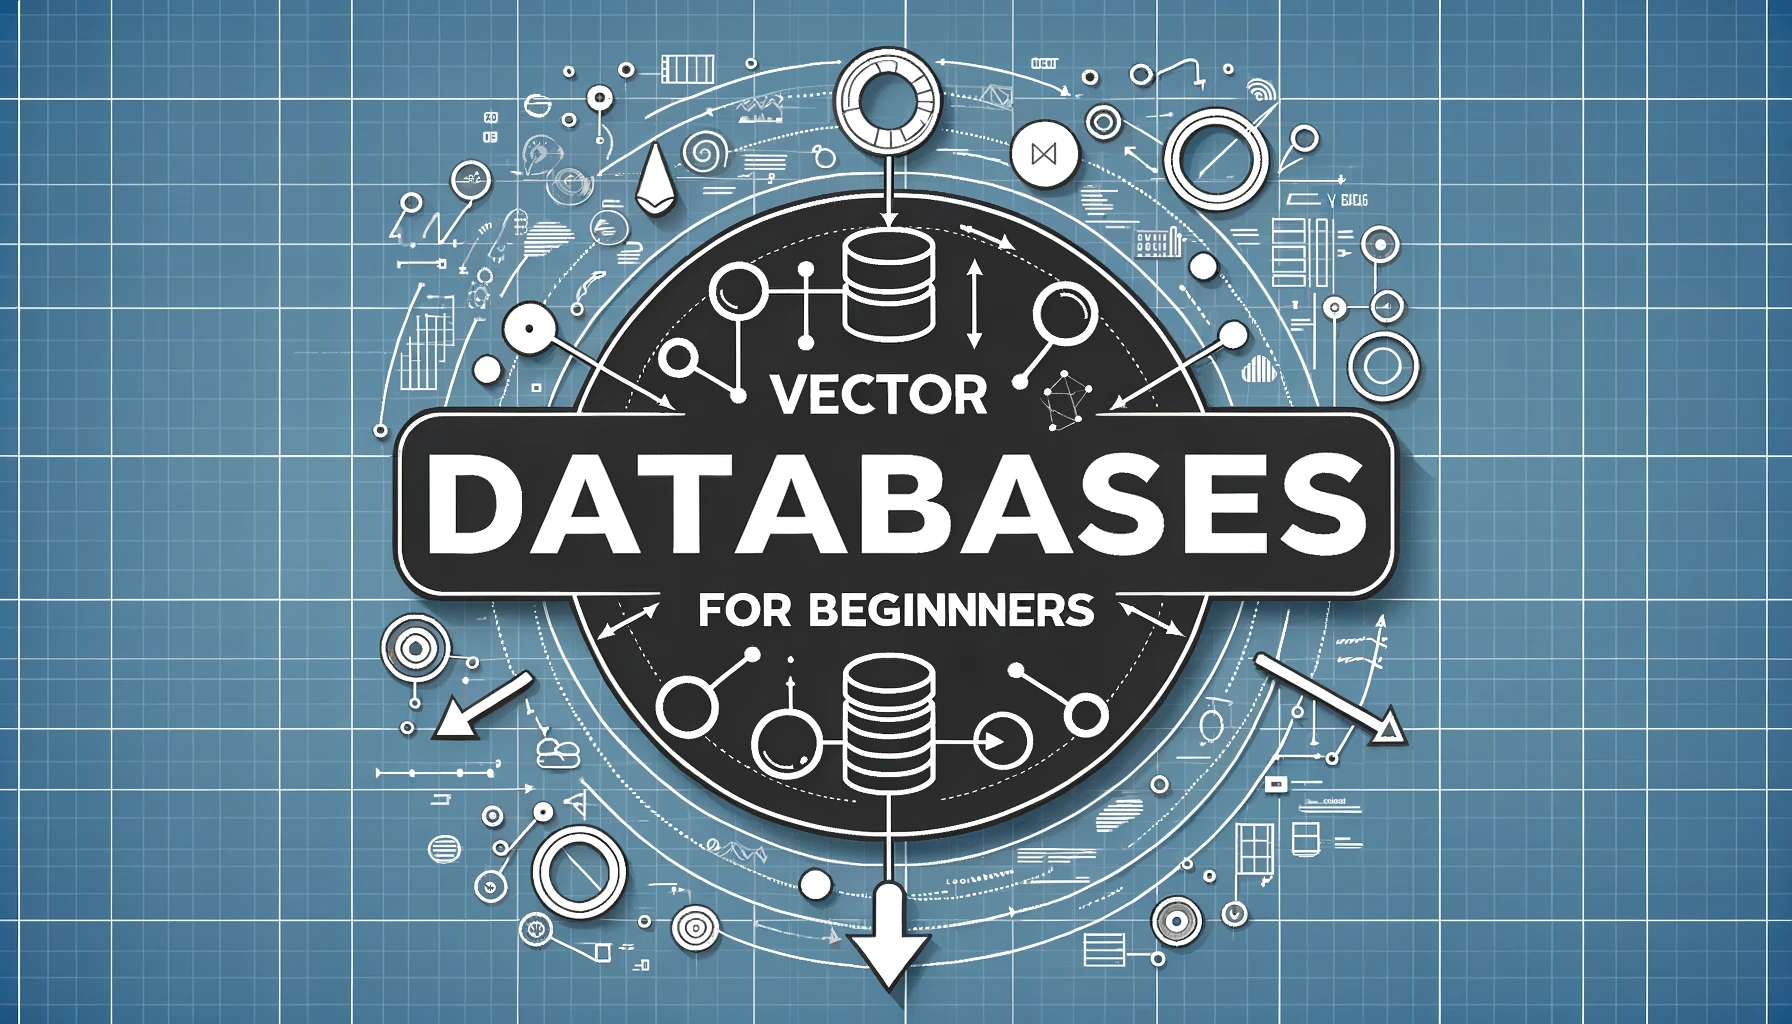 vector databases for beginners